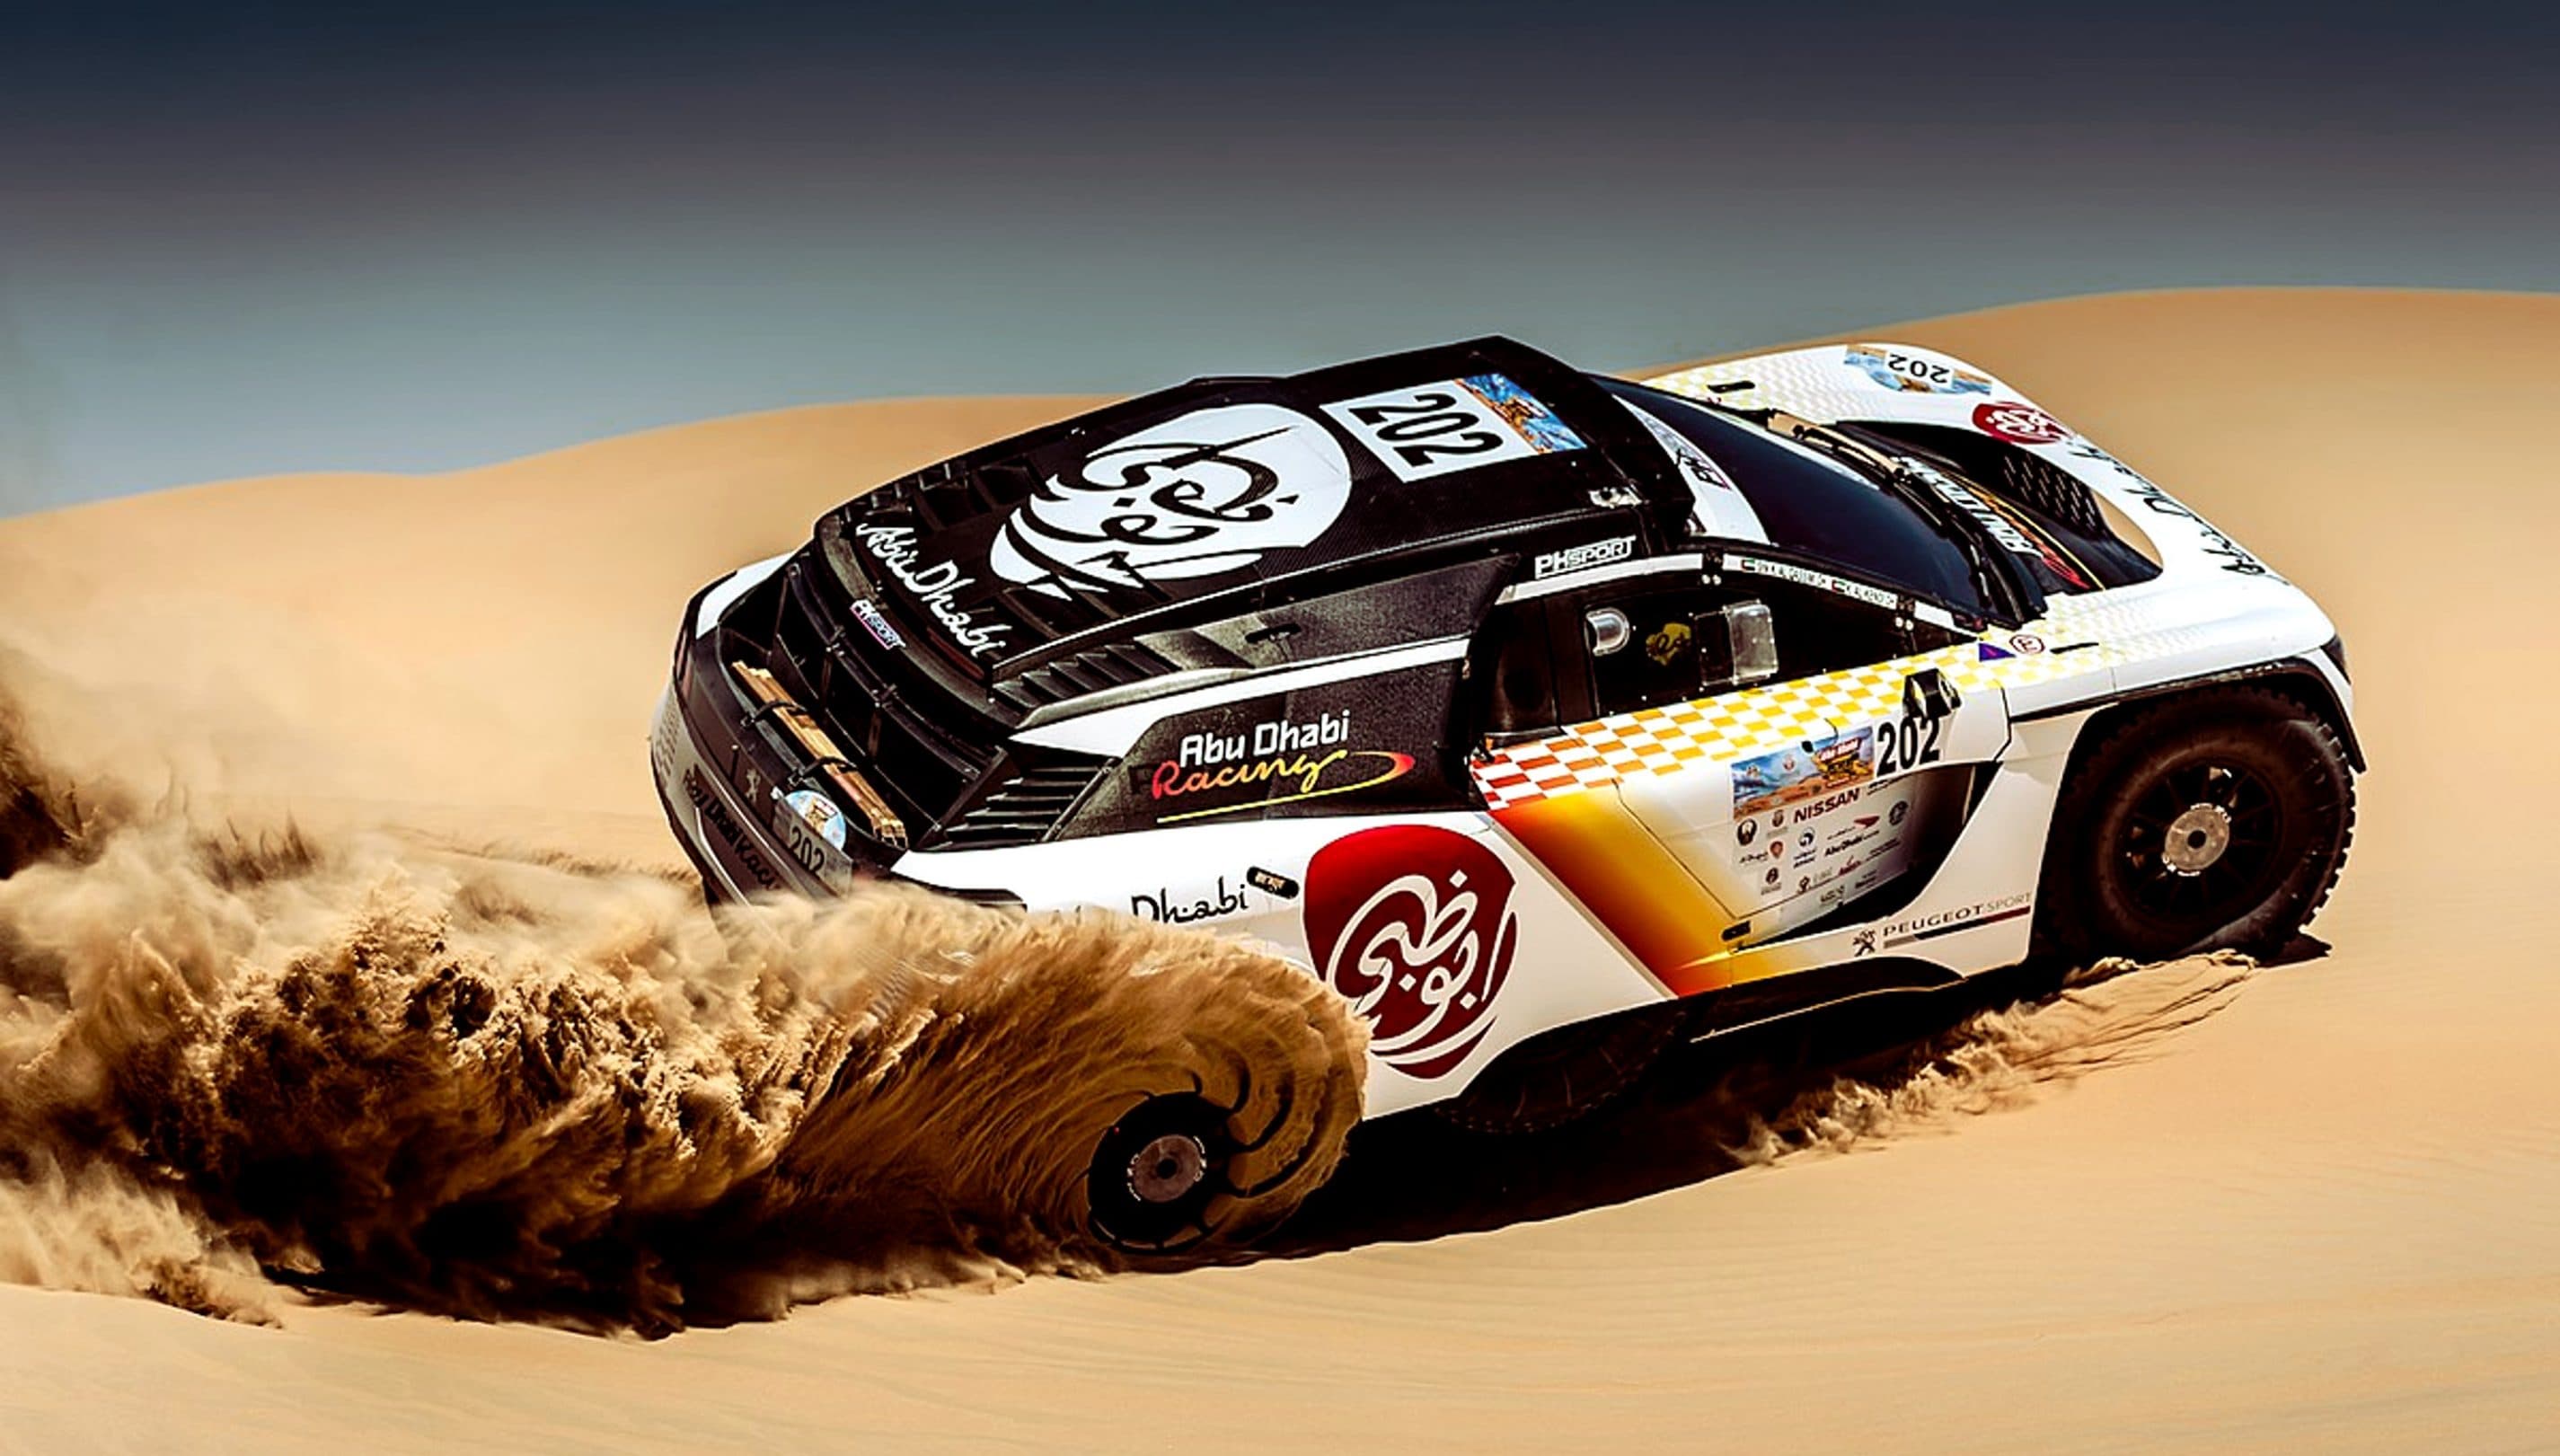 Desert Racing: Աբու Դաբի անապատի մարտահրավեր